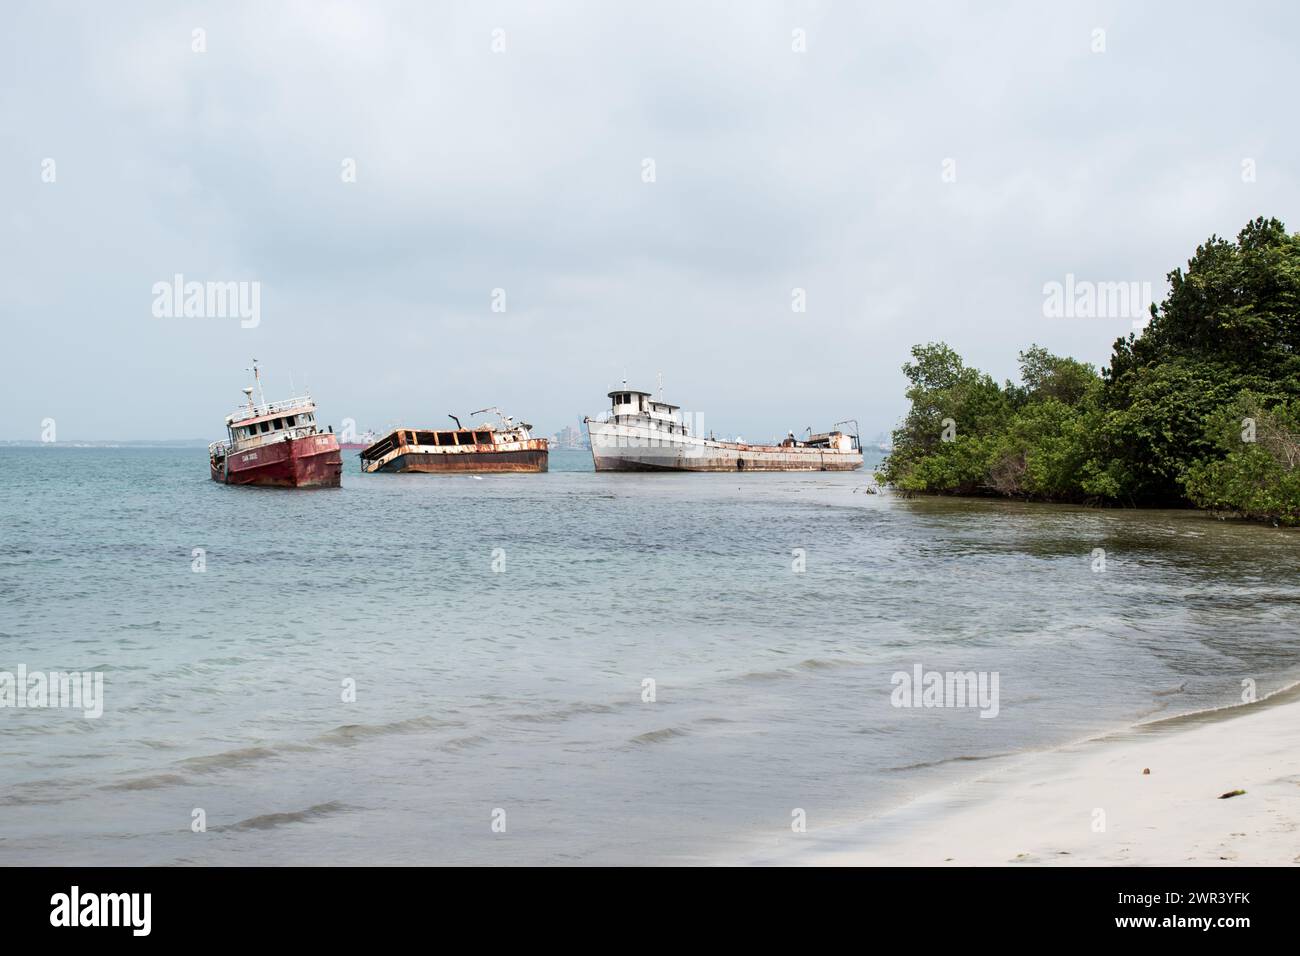 Verlassene Schiffe, verlassene Schiffe oder Schiffswracks säumen die Karibikküste Panamas und stellen damit eine Herausforderung für den Umweltschutz dar. Stockfoto